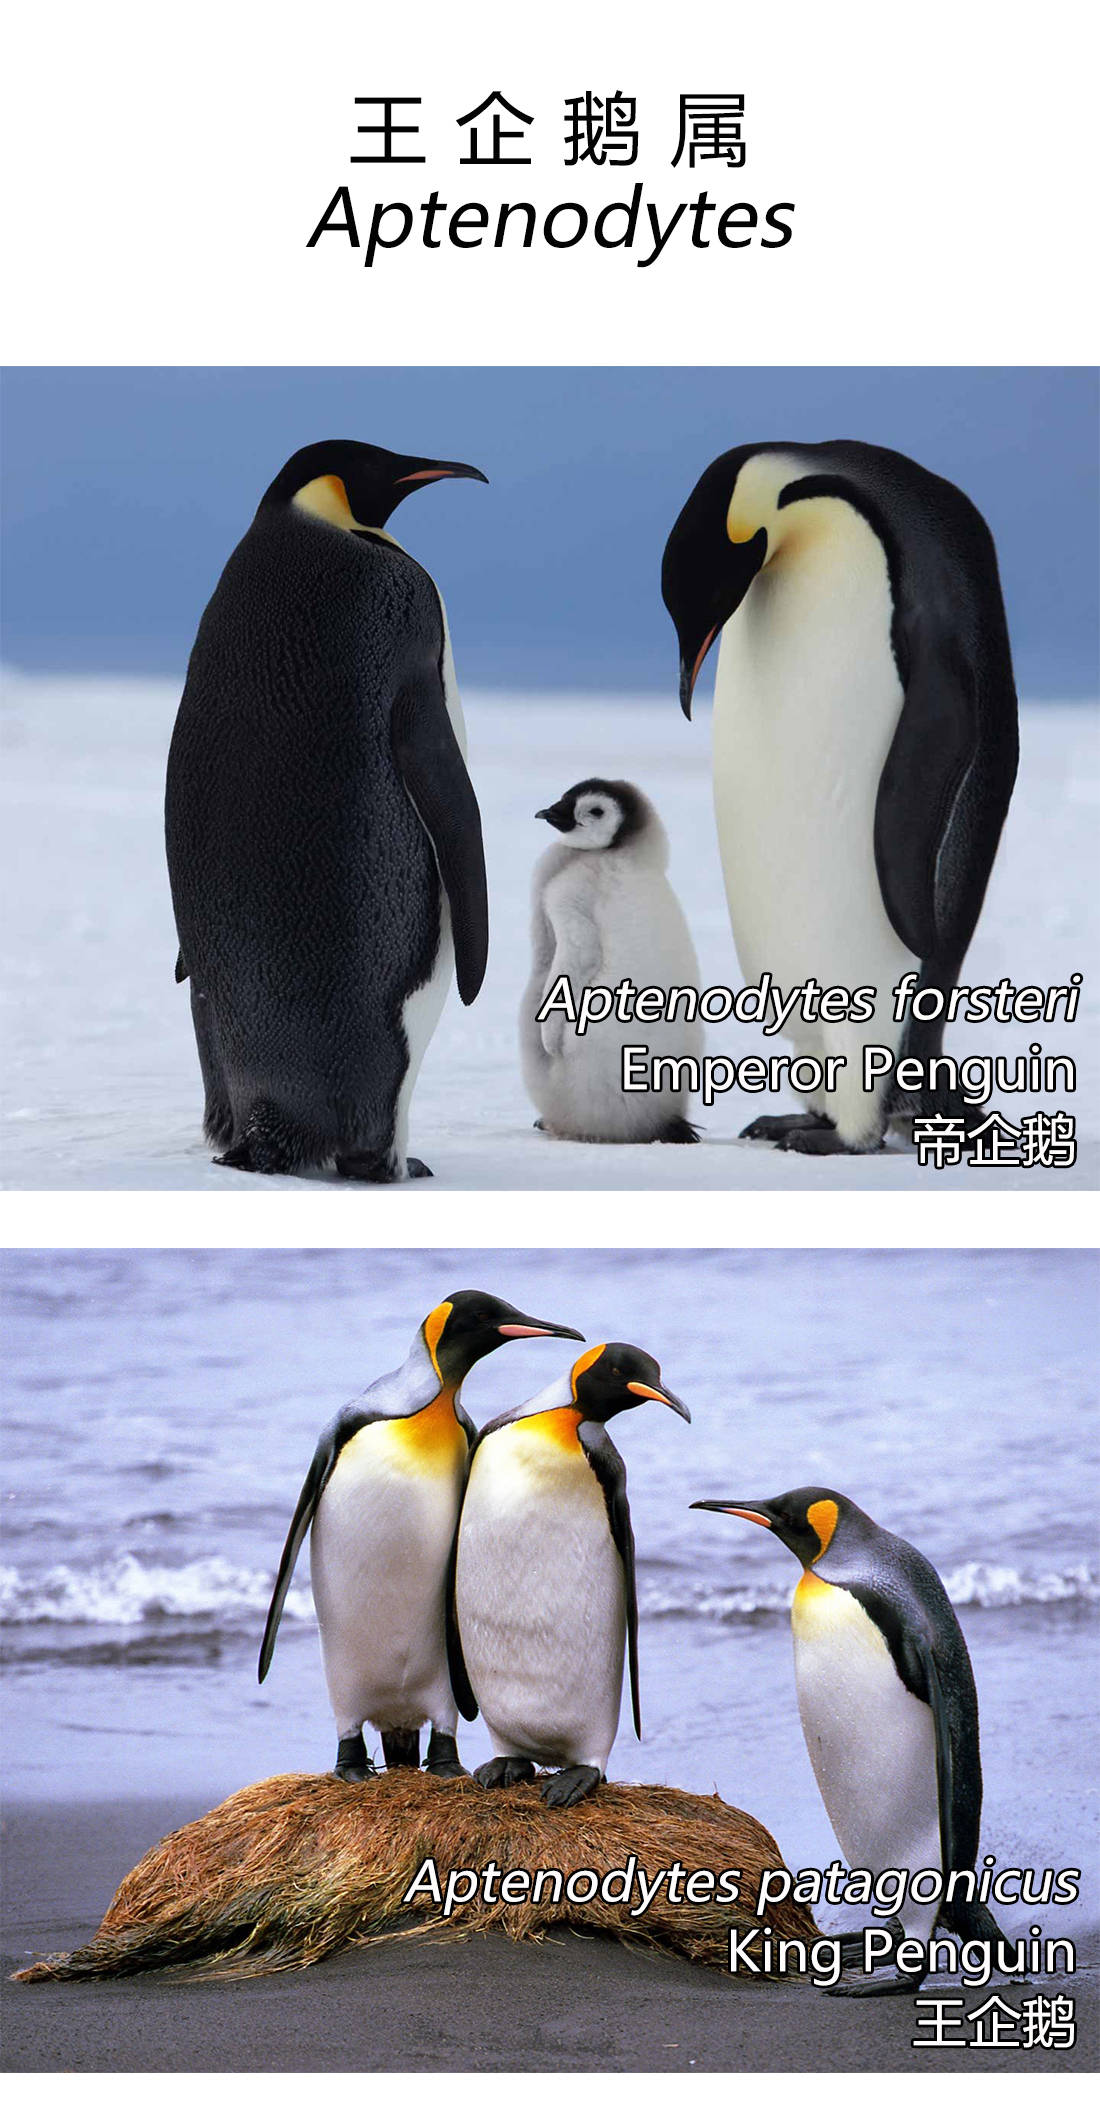 世界企鹅日来学会区分企鹅的种类吧